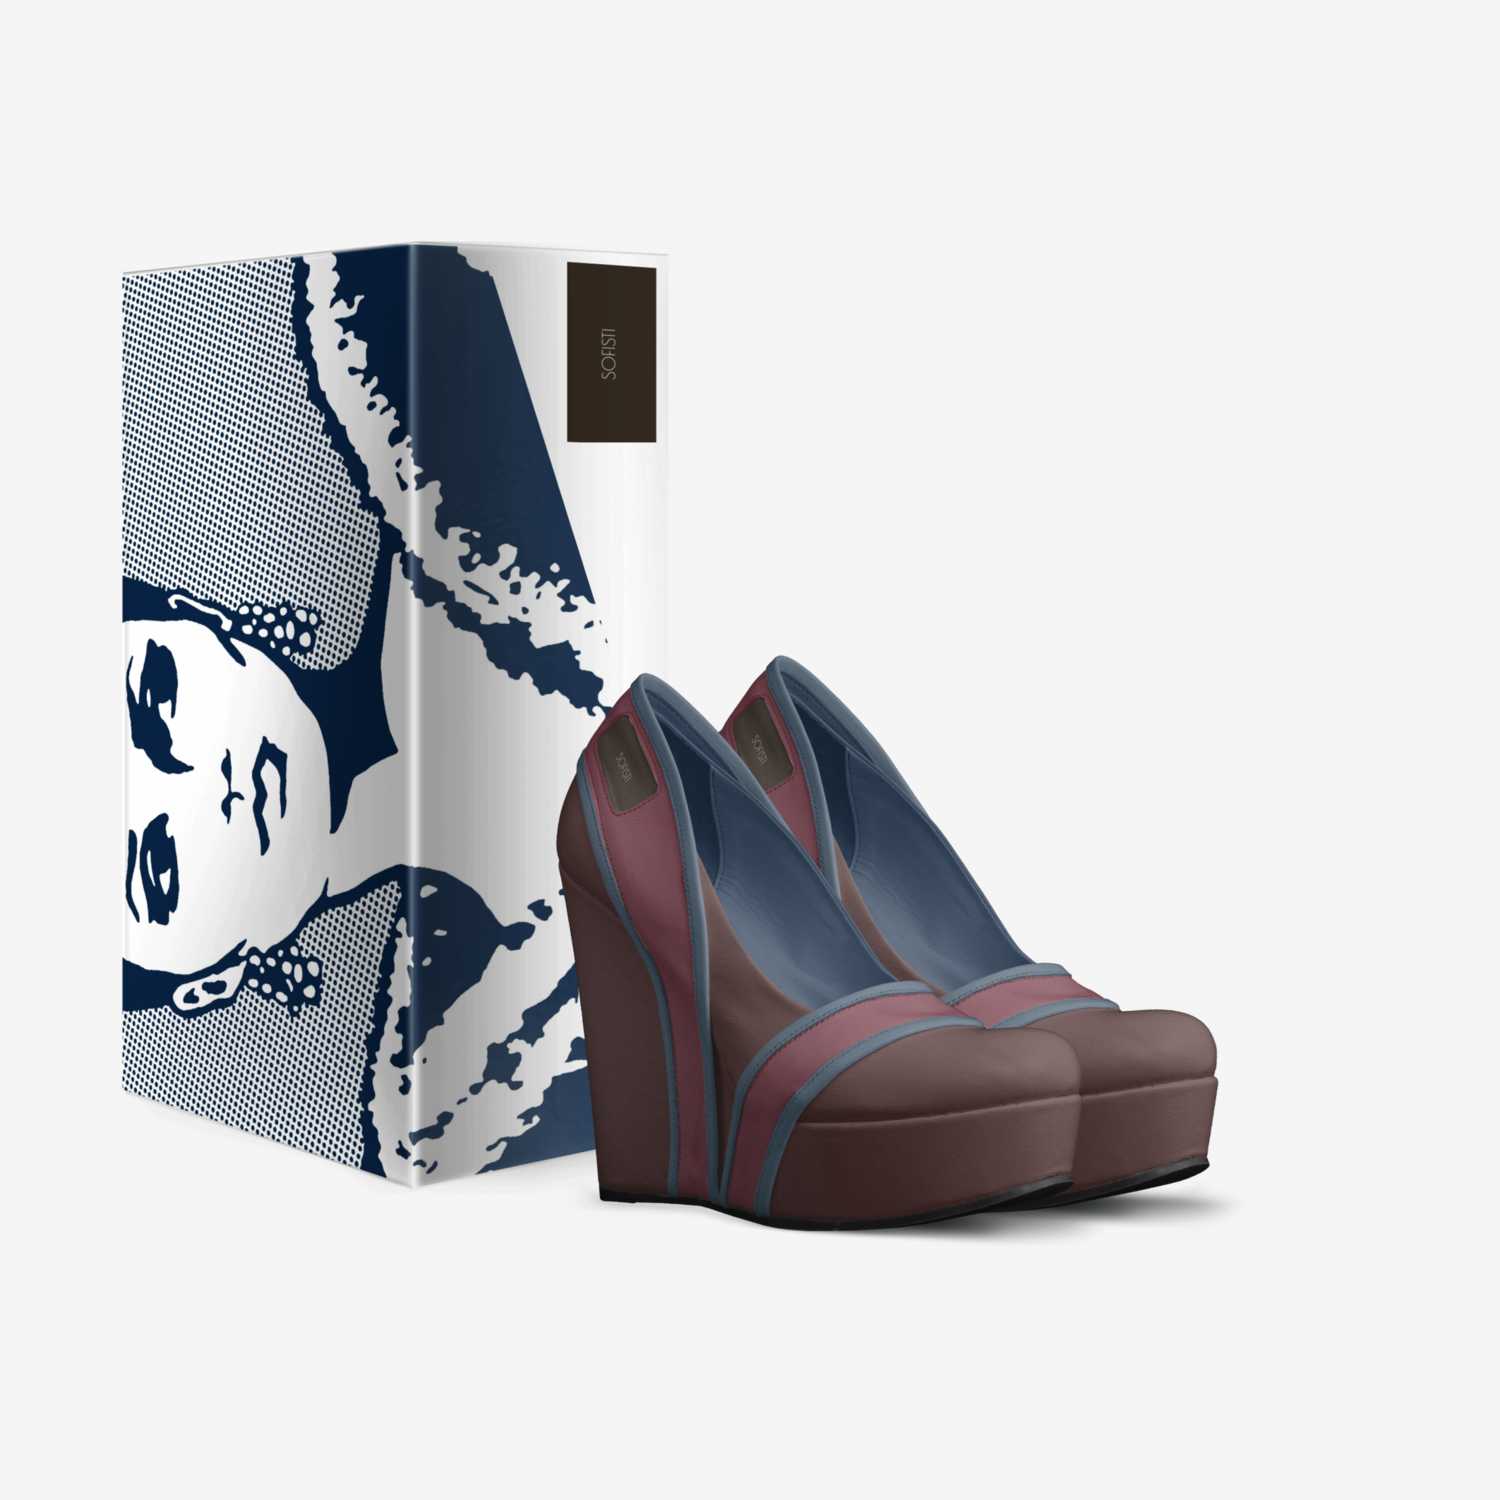 sofisti custom made in Italy shoes by Nadia Fabbietti | Box view